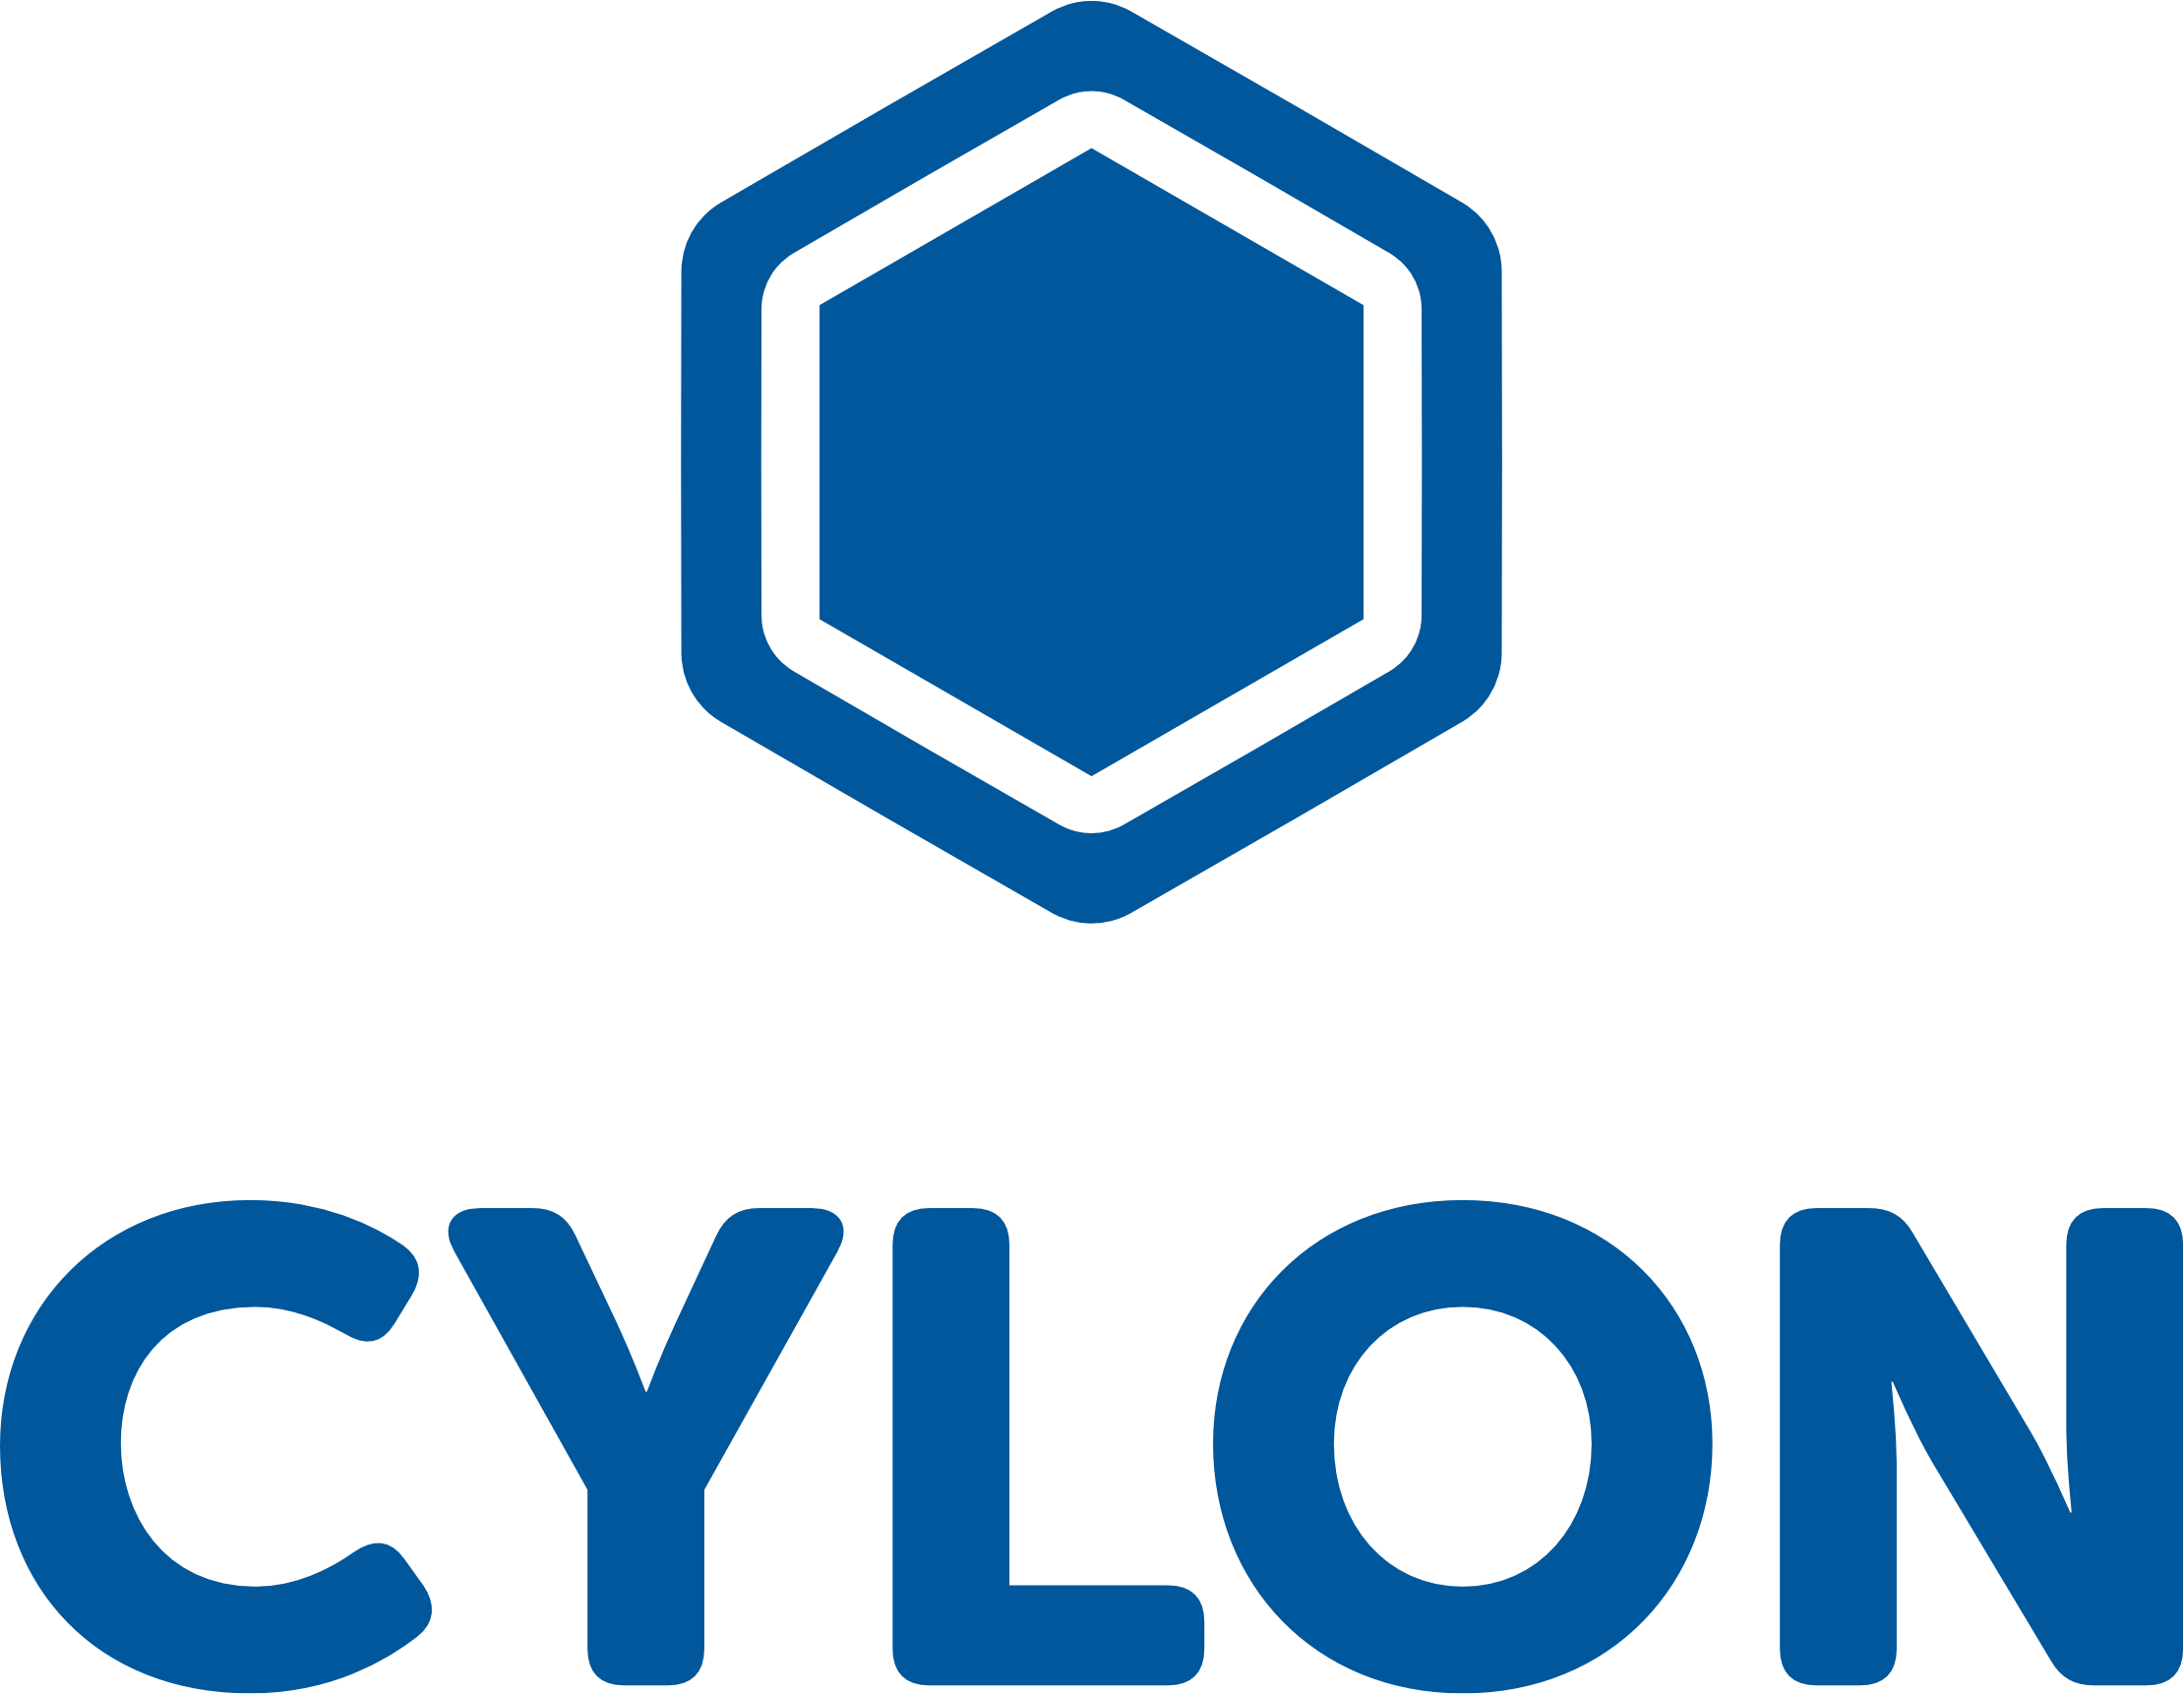 Cylon Logo - TechDay